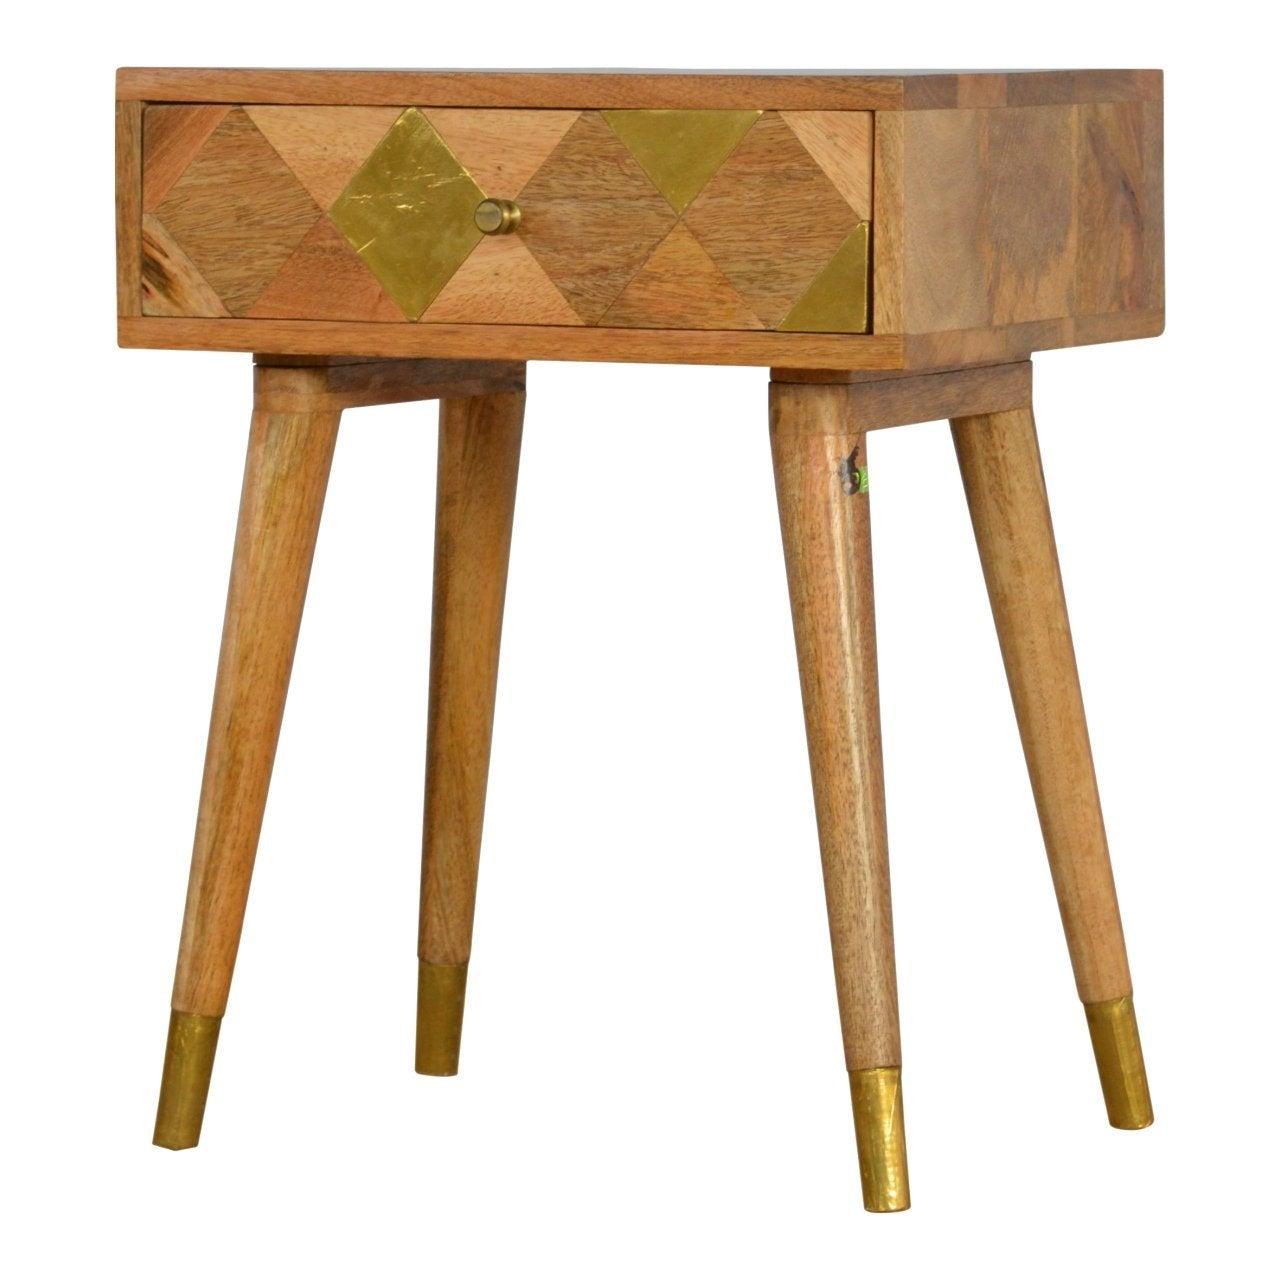 Oak-ish gold brass inlay bedside table - crimblefest furniture - image 3